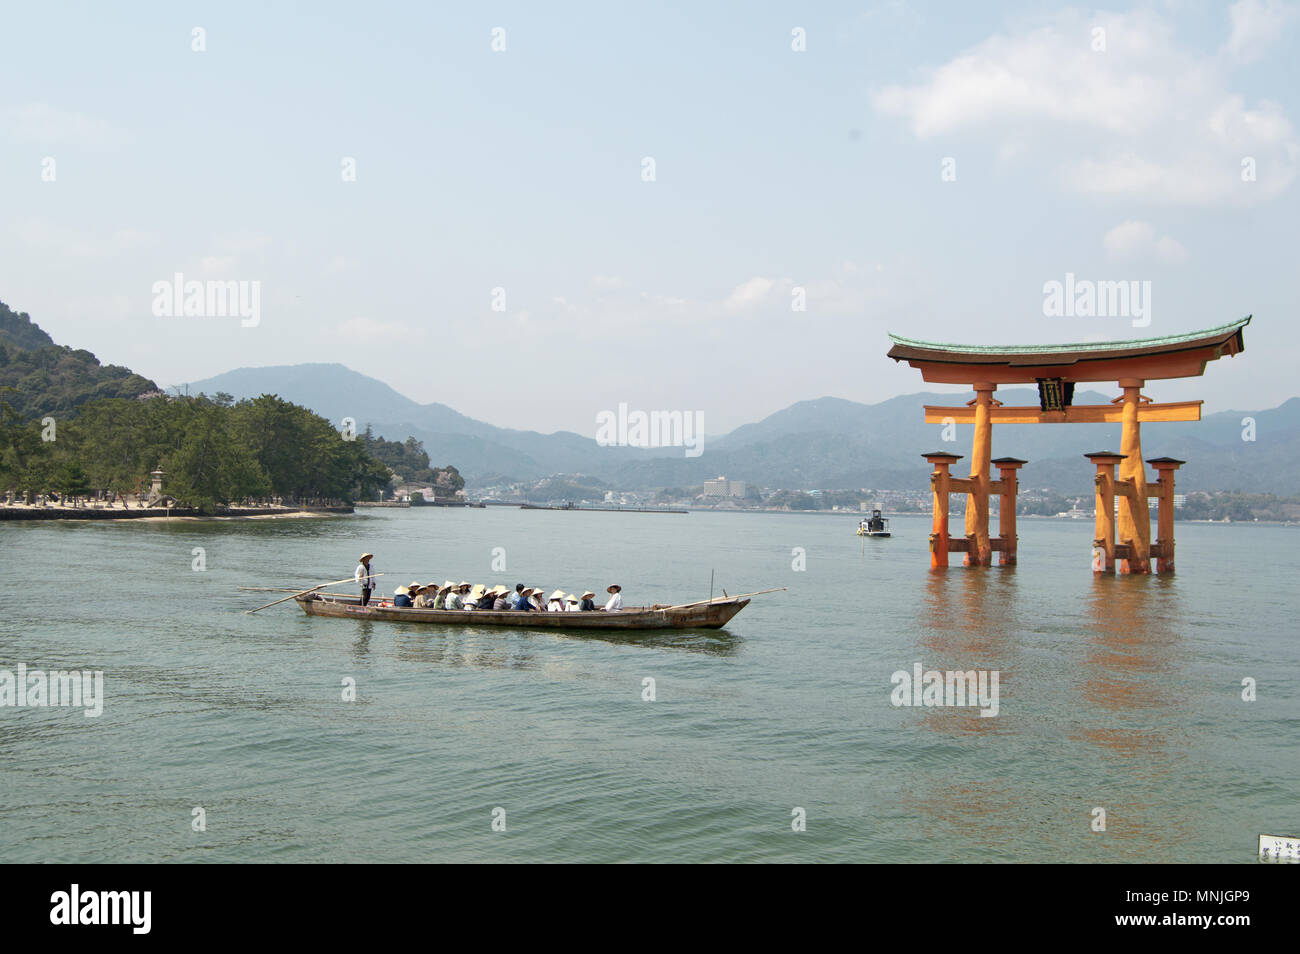 Sanctuaire d'Itsukushima, 'floating culte', sur l'île de Miyajima avec bateau de tourisme, Japon Banque D'Images